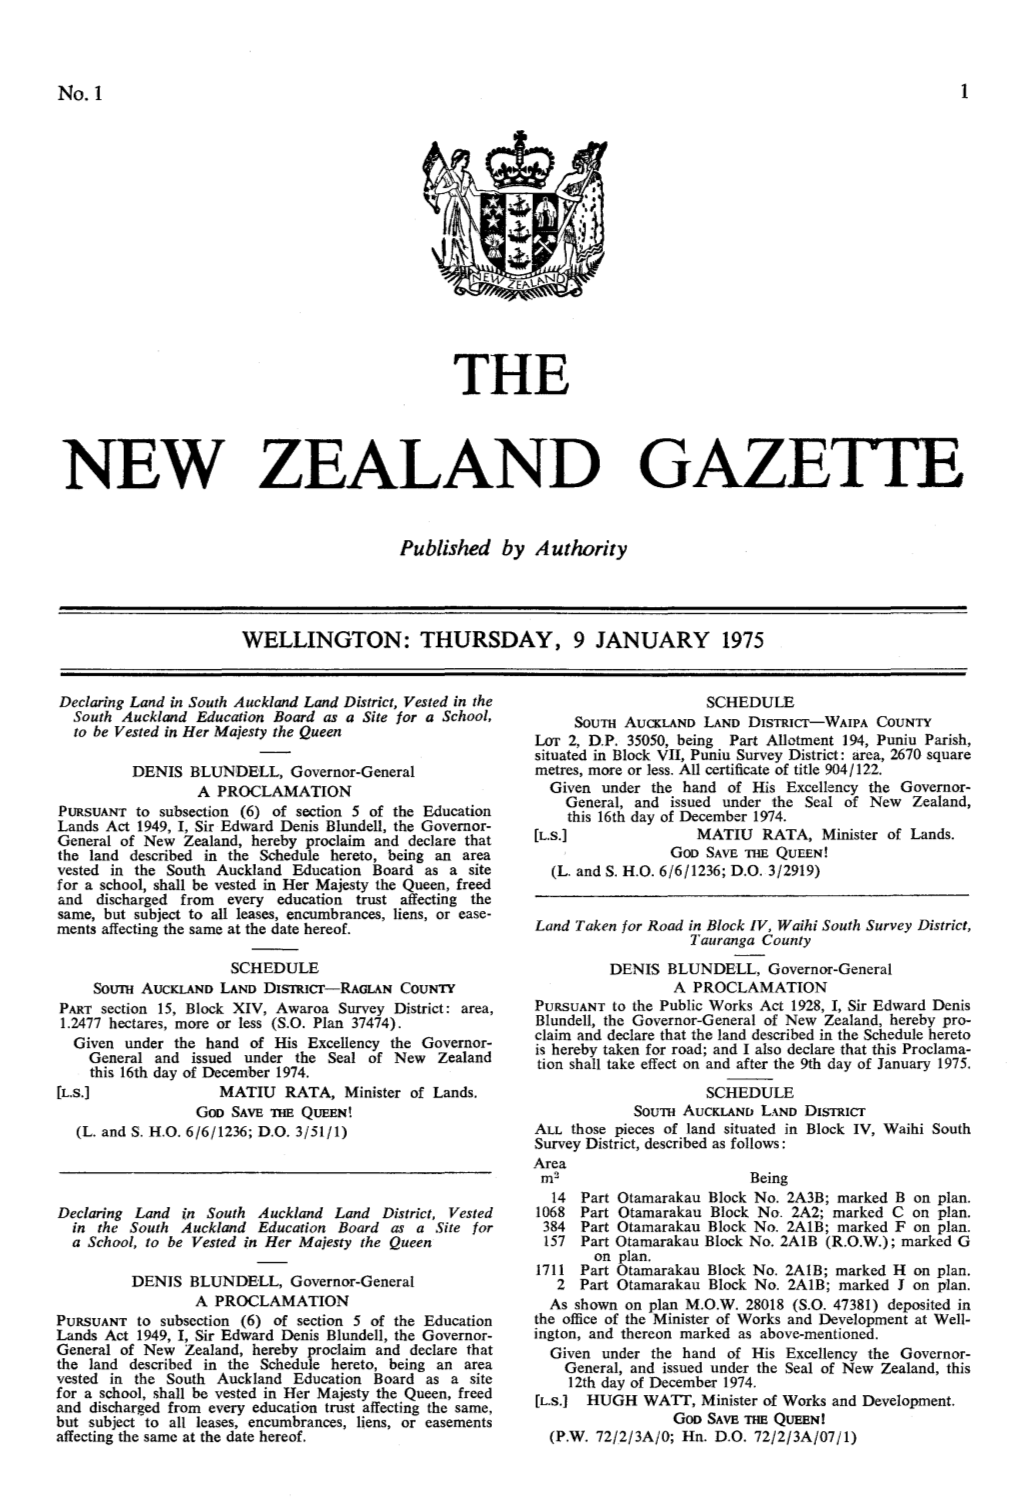 No 1, 9 January 1975, 1